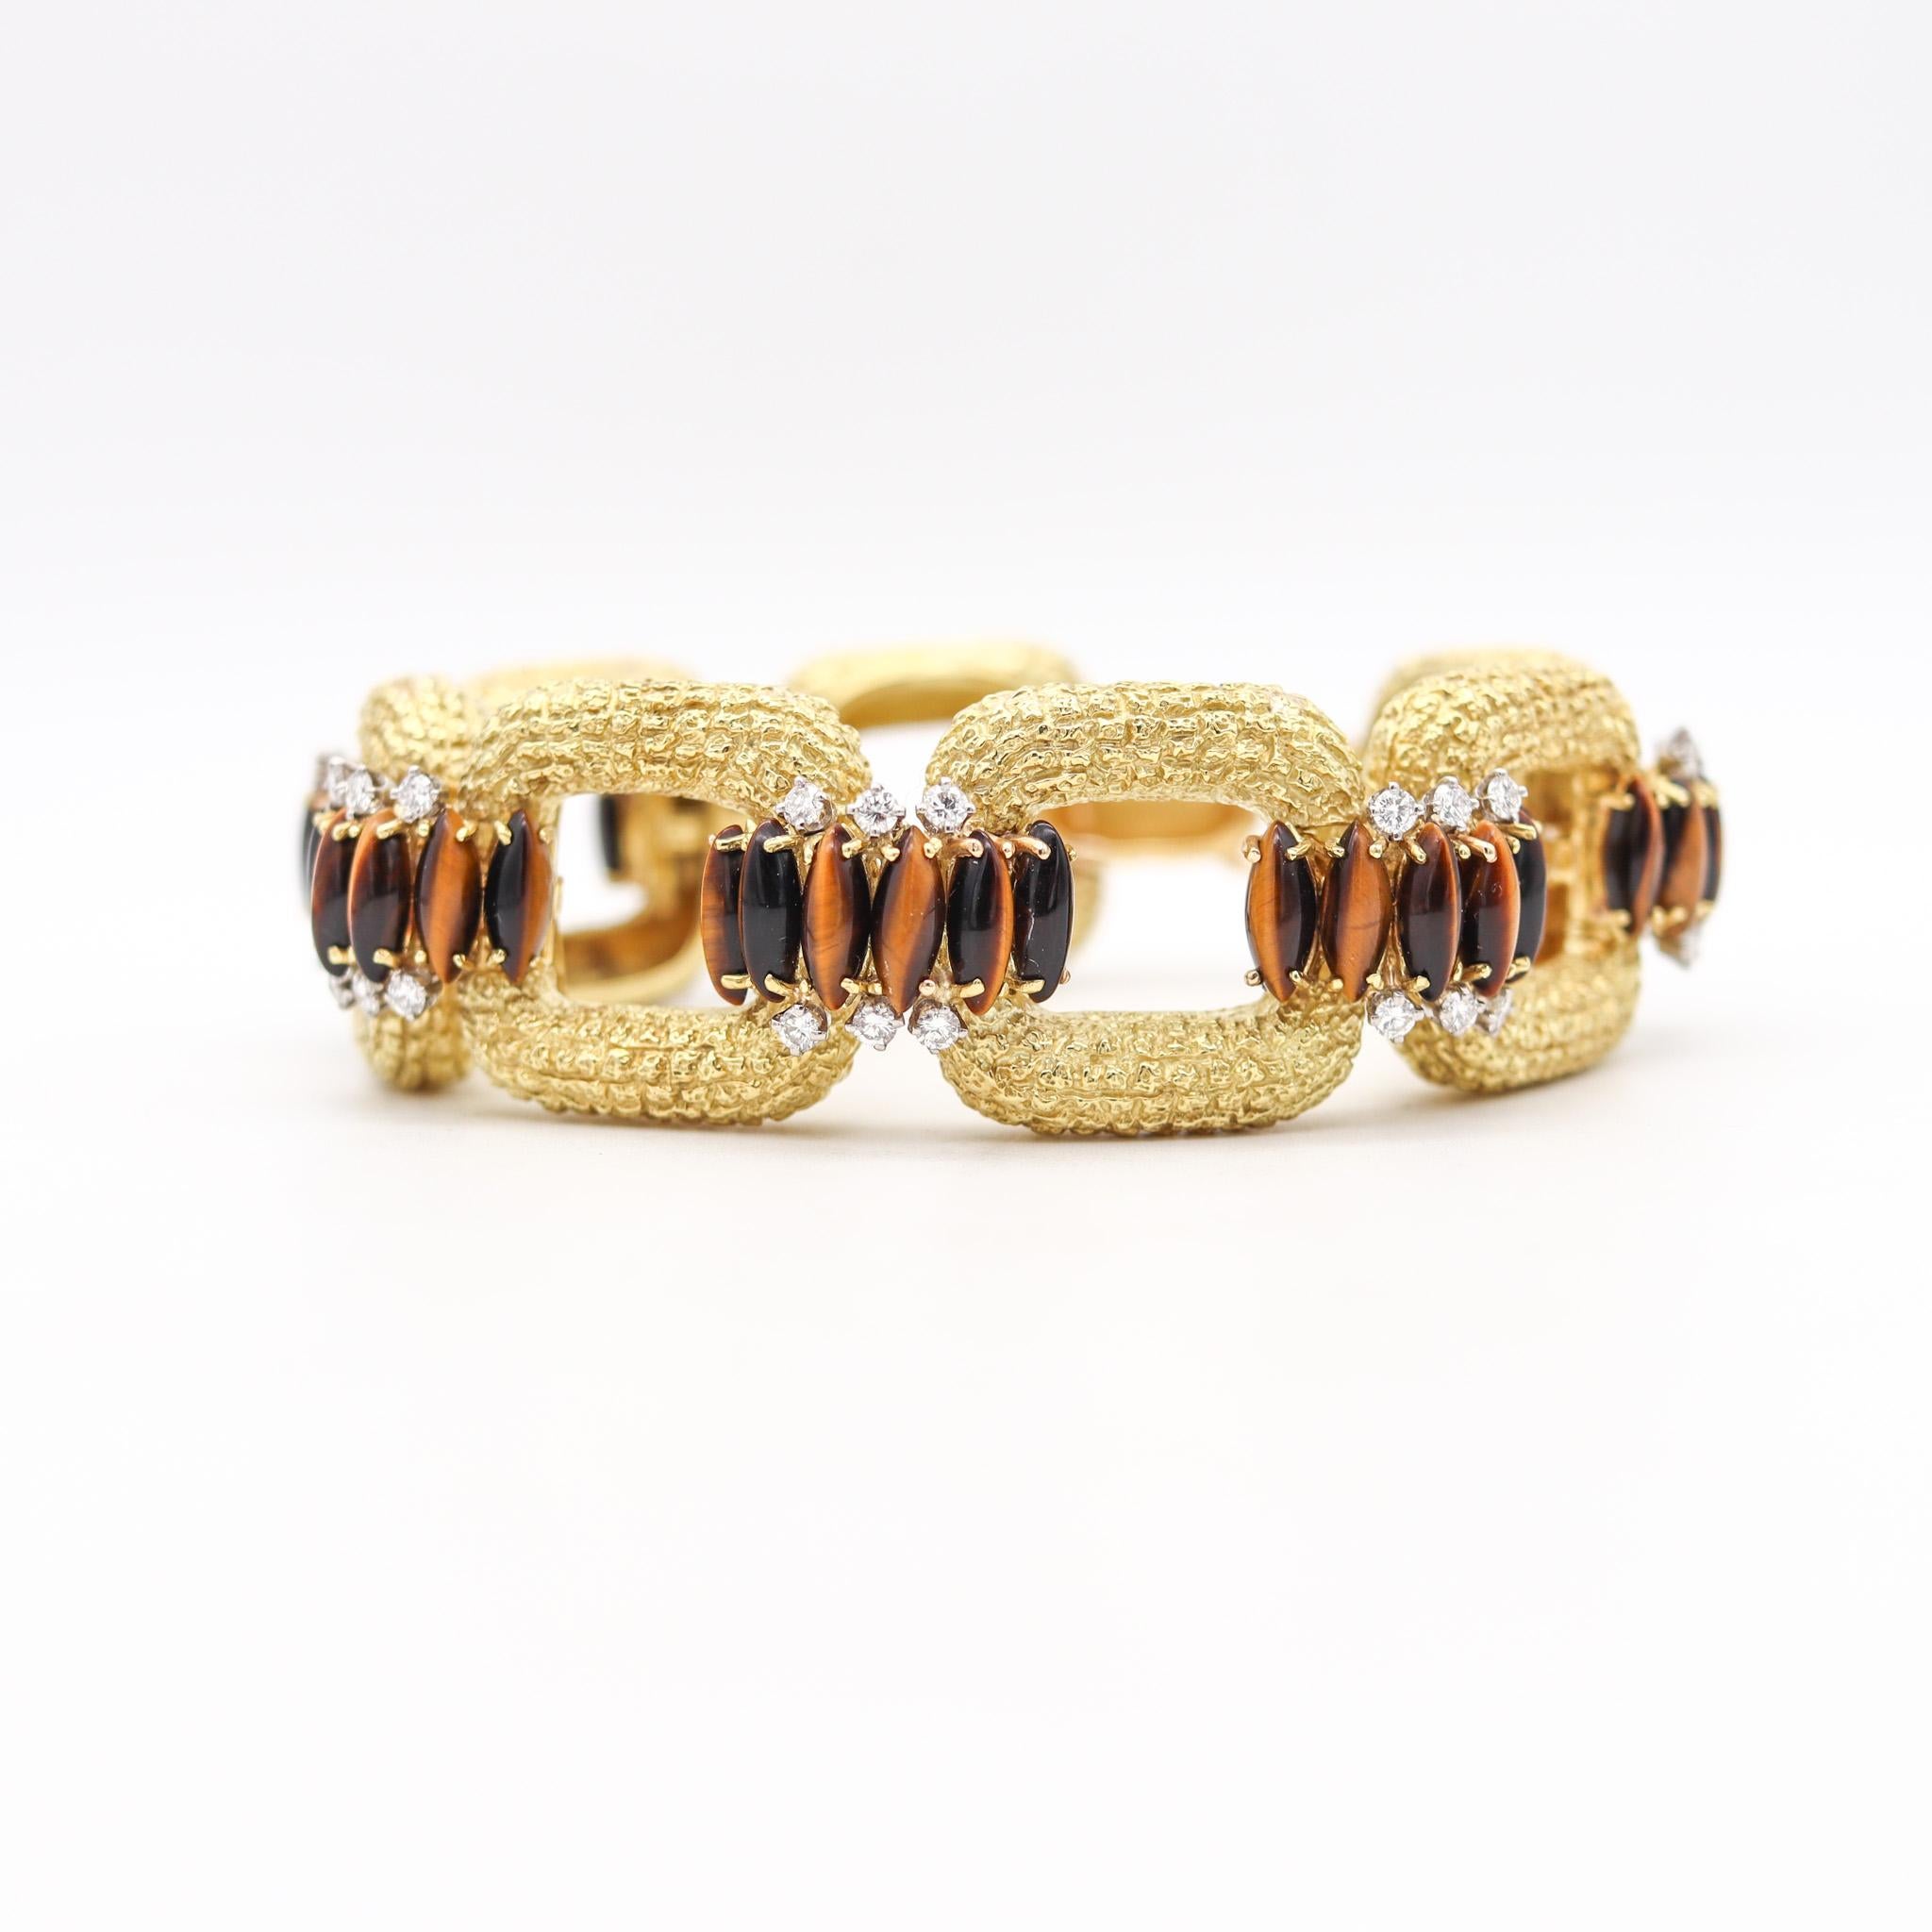 Un bracelet d'apparat conçu par La Triomphe.

Fantastique bracelet rétro moderniste, créé à Astoria New York par La Triomphe, au début des années 1970. Cette magnifique pièce a été soigneusement fabriquée en or jaune riche et massif de 18 carats